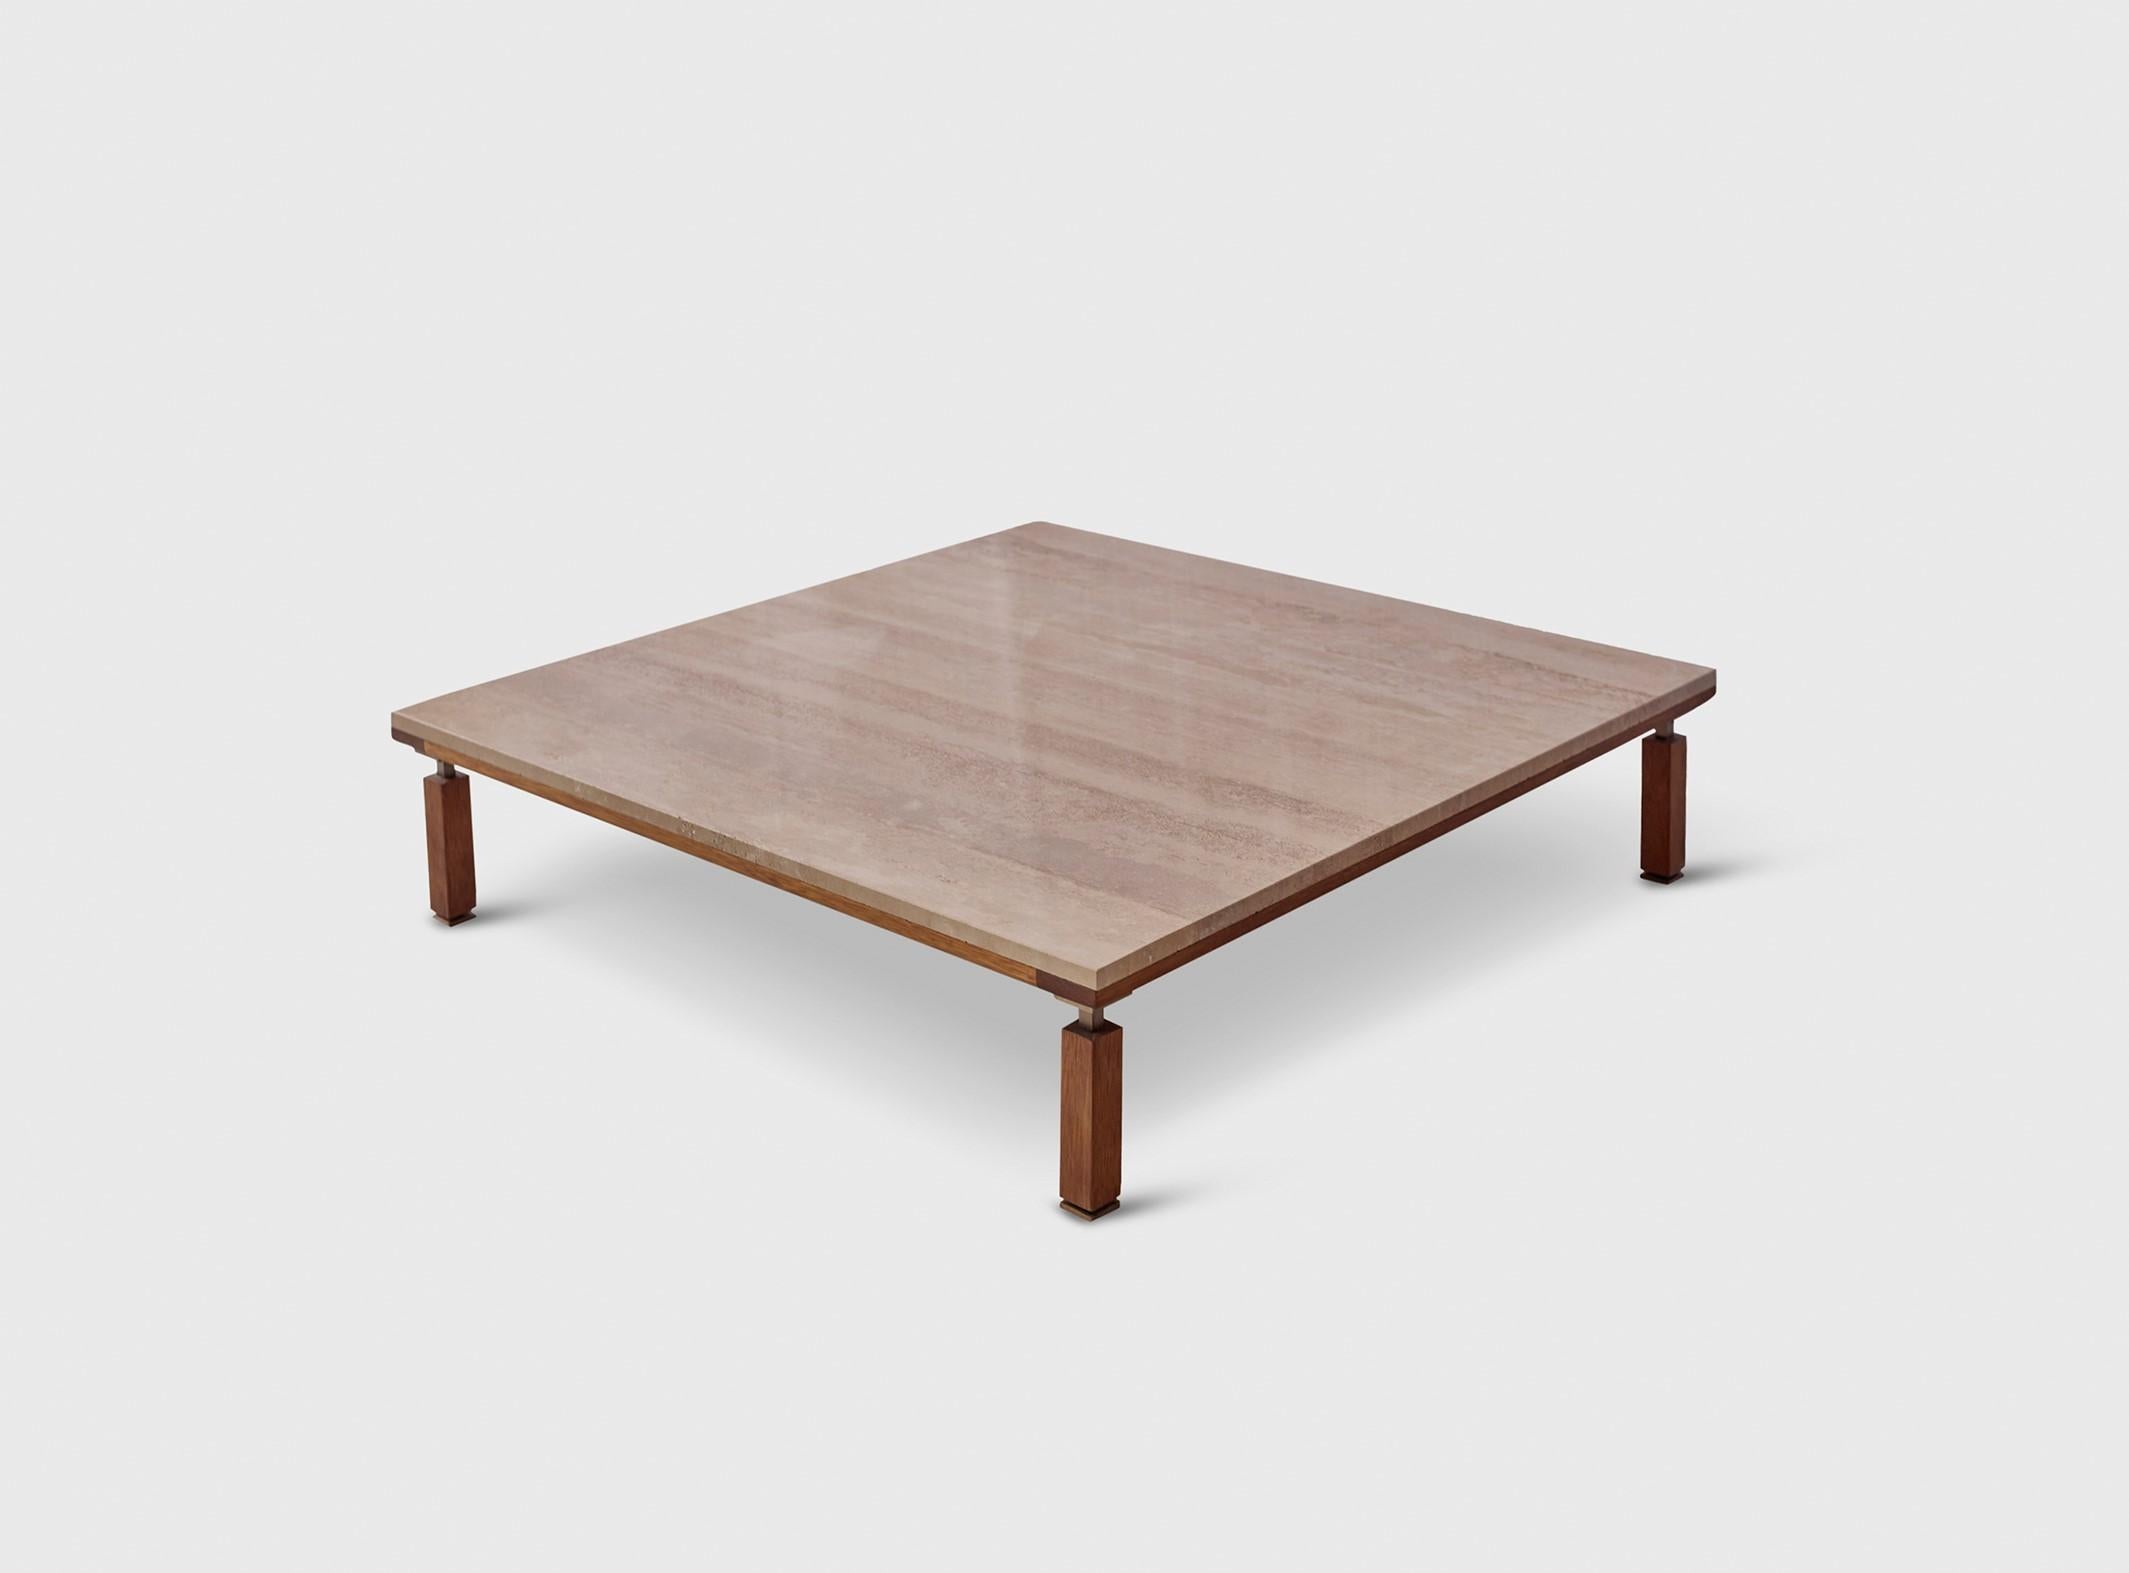 Table basse Nerthus par ATRA Design
Dimensions : D 108,5 x L 108,5 x H 38 cm
Matériaux : bois d'acajou, marbre, acier.

Design/One
Nous sommes Atra, une marque de mobilier produite par Atra form, un site de production haut de gamme basé à Mexico qui